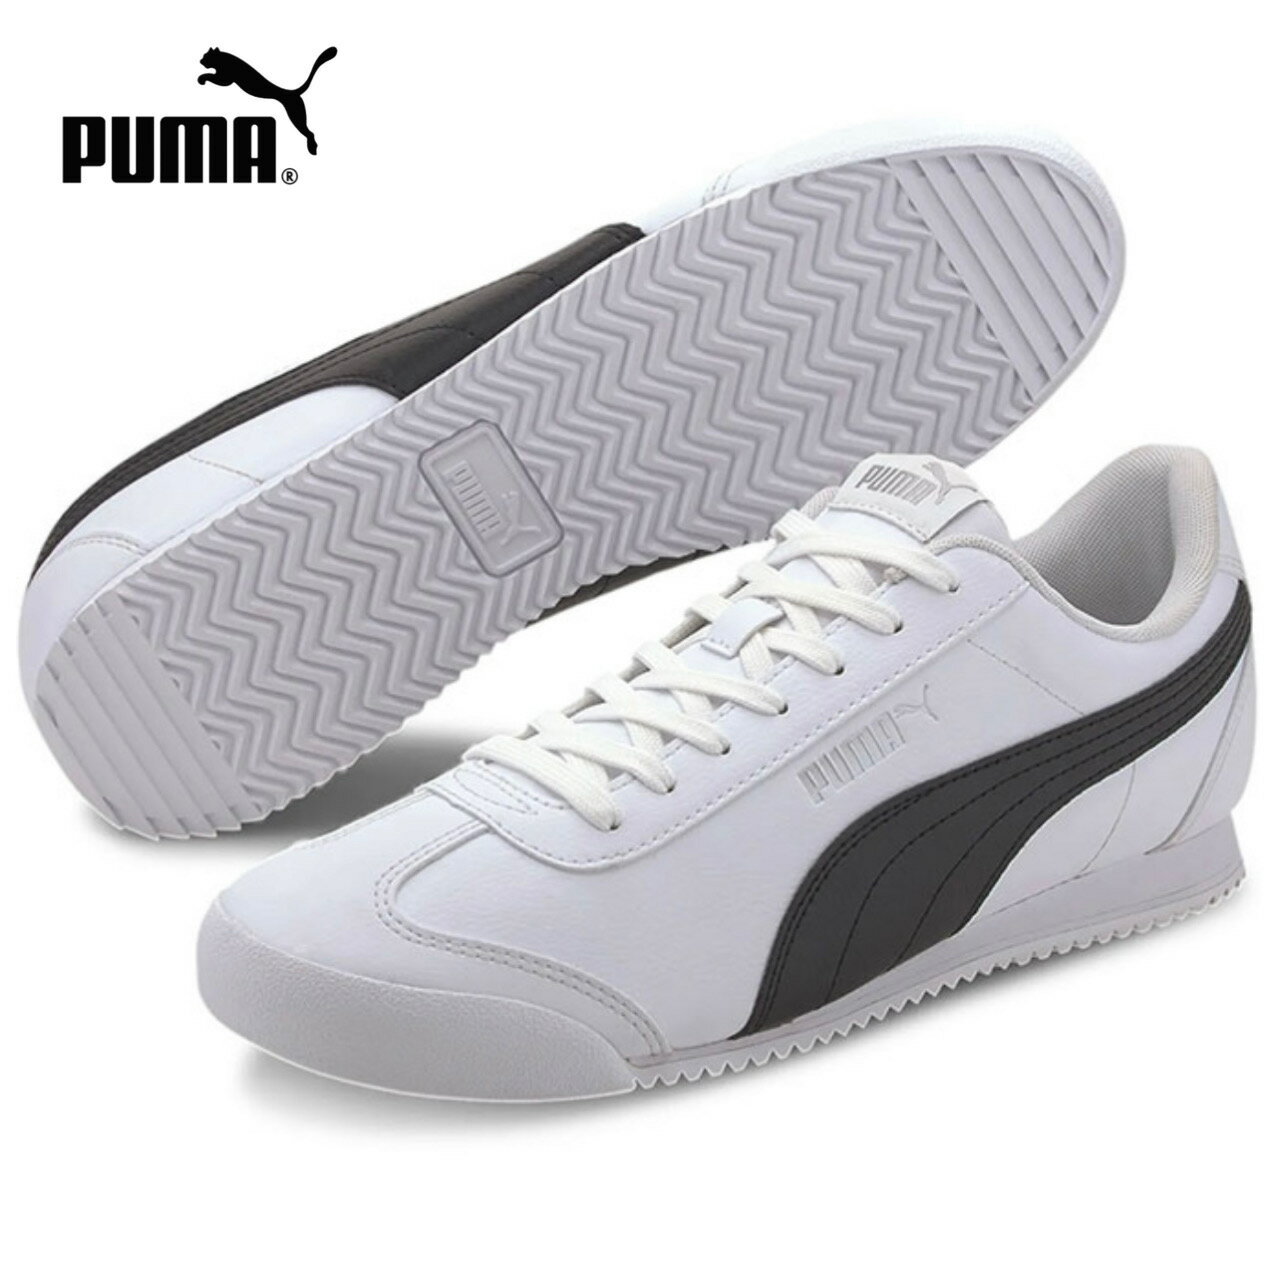 プーマ / チュリーノ FSL ホワイト 白 ブラック 黒 372861 04 ( PUMA )【レディース メンズ スニーカー 靴 シューズ レディーシューズ メンズシューズ ローカット 通学 ユニセックス カジュアルシューズ タウンユース 通勤 フットウェア】 (※後継モデルです。)